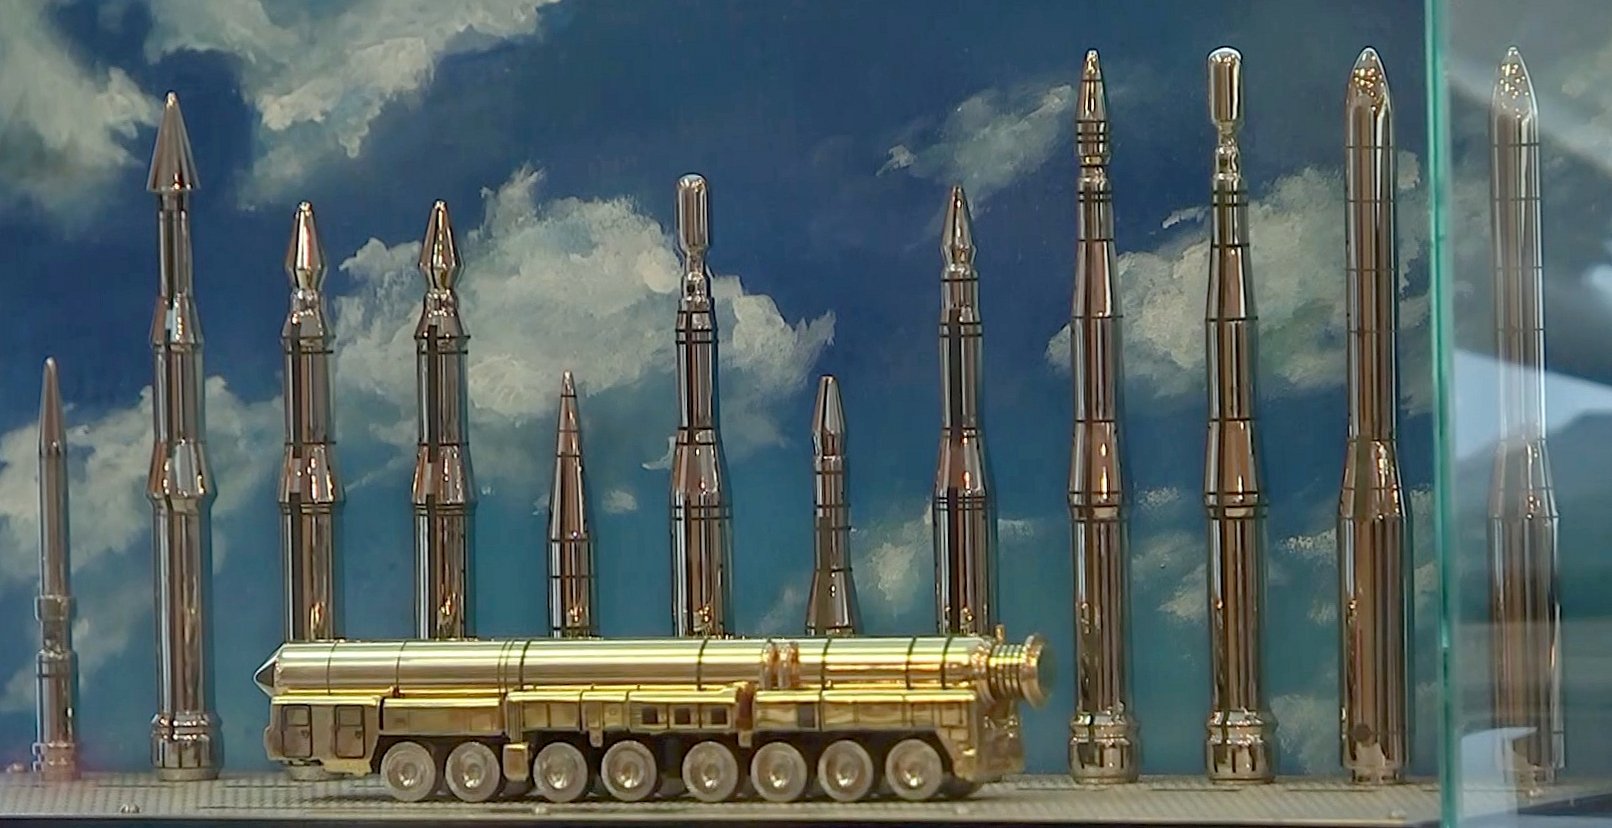 Ракетный комплекс средней дальности рсд-10 пионер (ss-20)